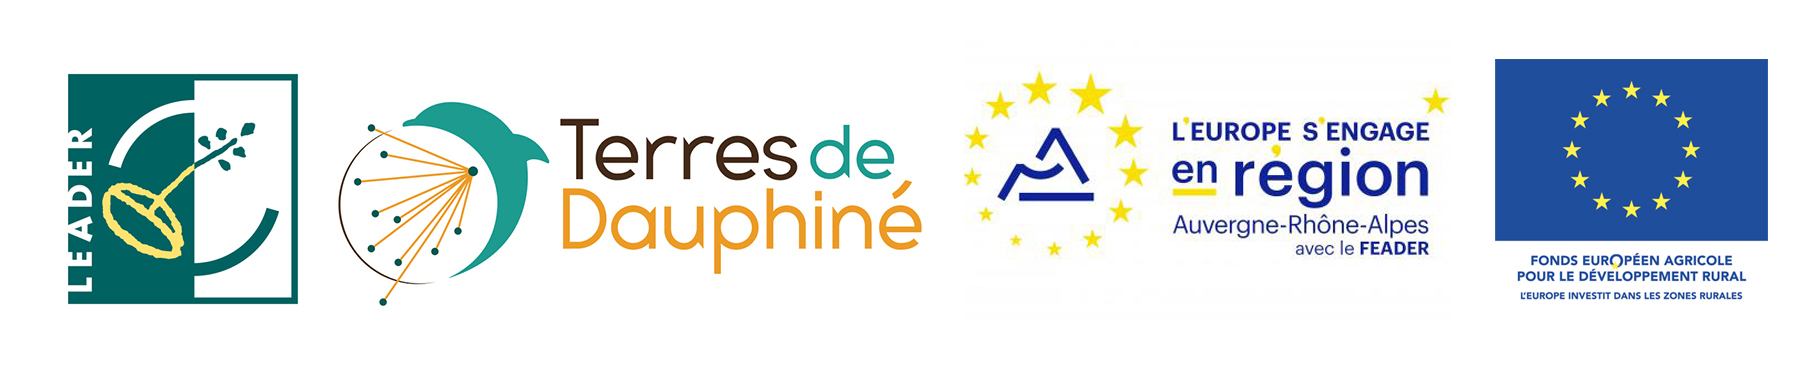 Terres de Dauphiné - logos